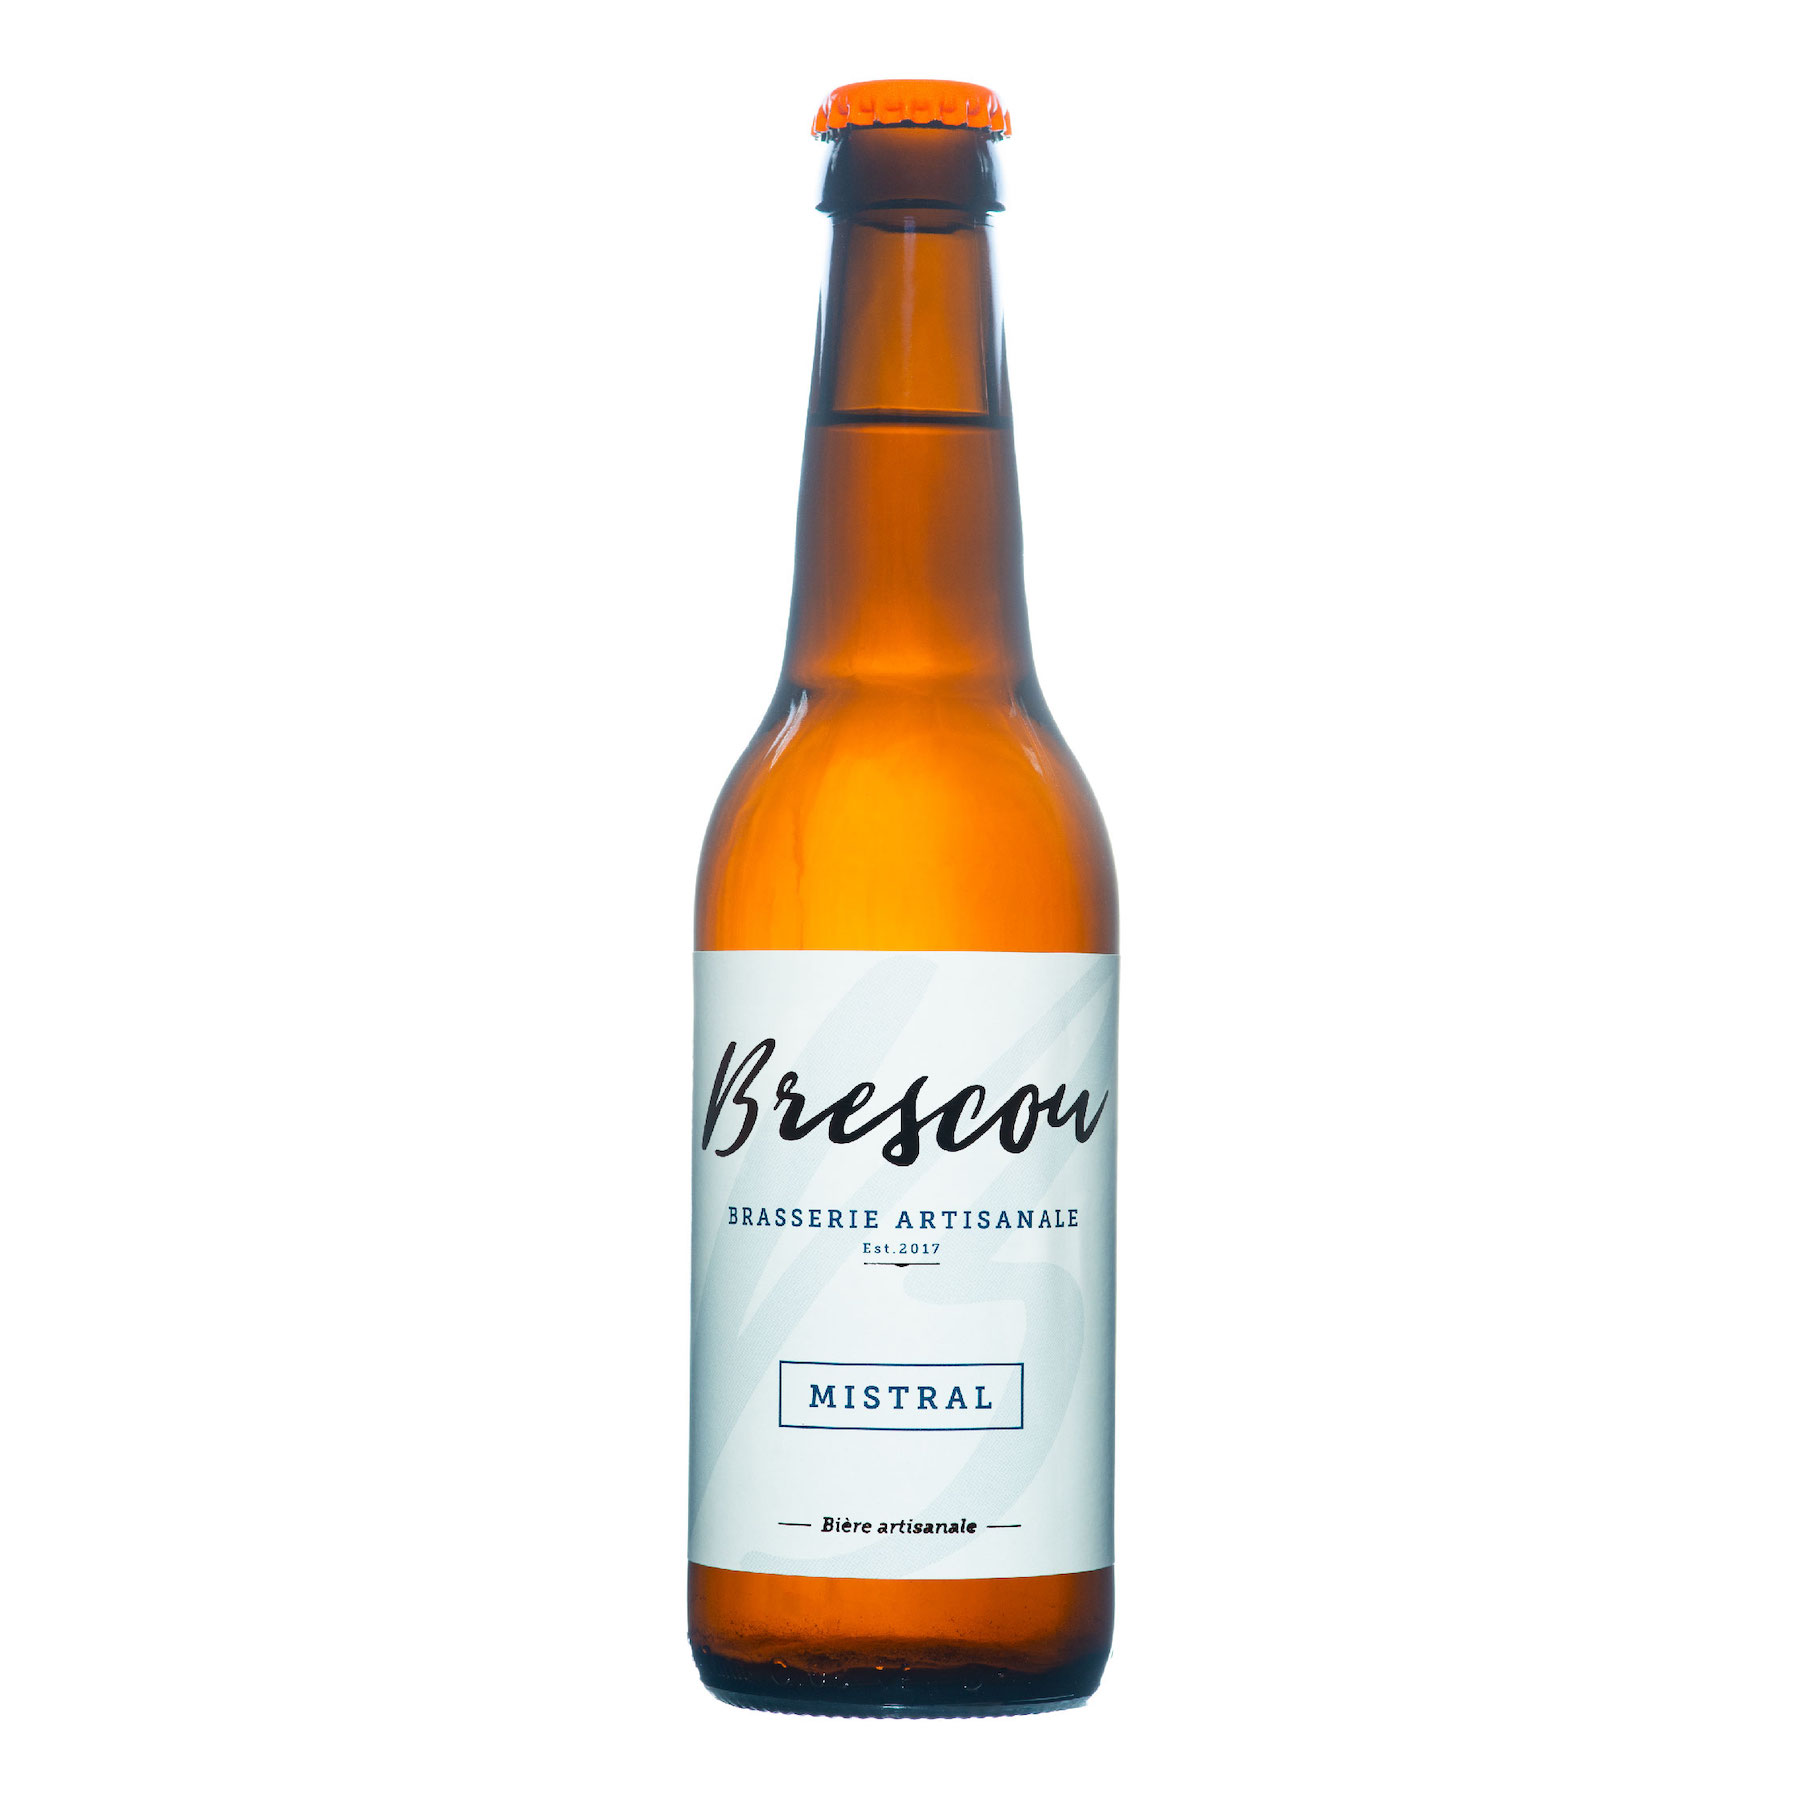 Bière Mistral de Brasserie Artisanale Brescou